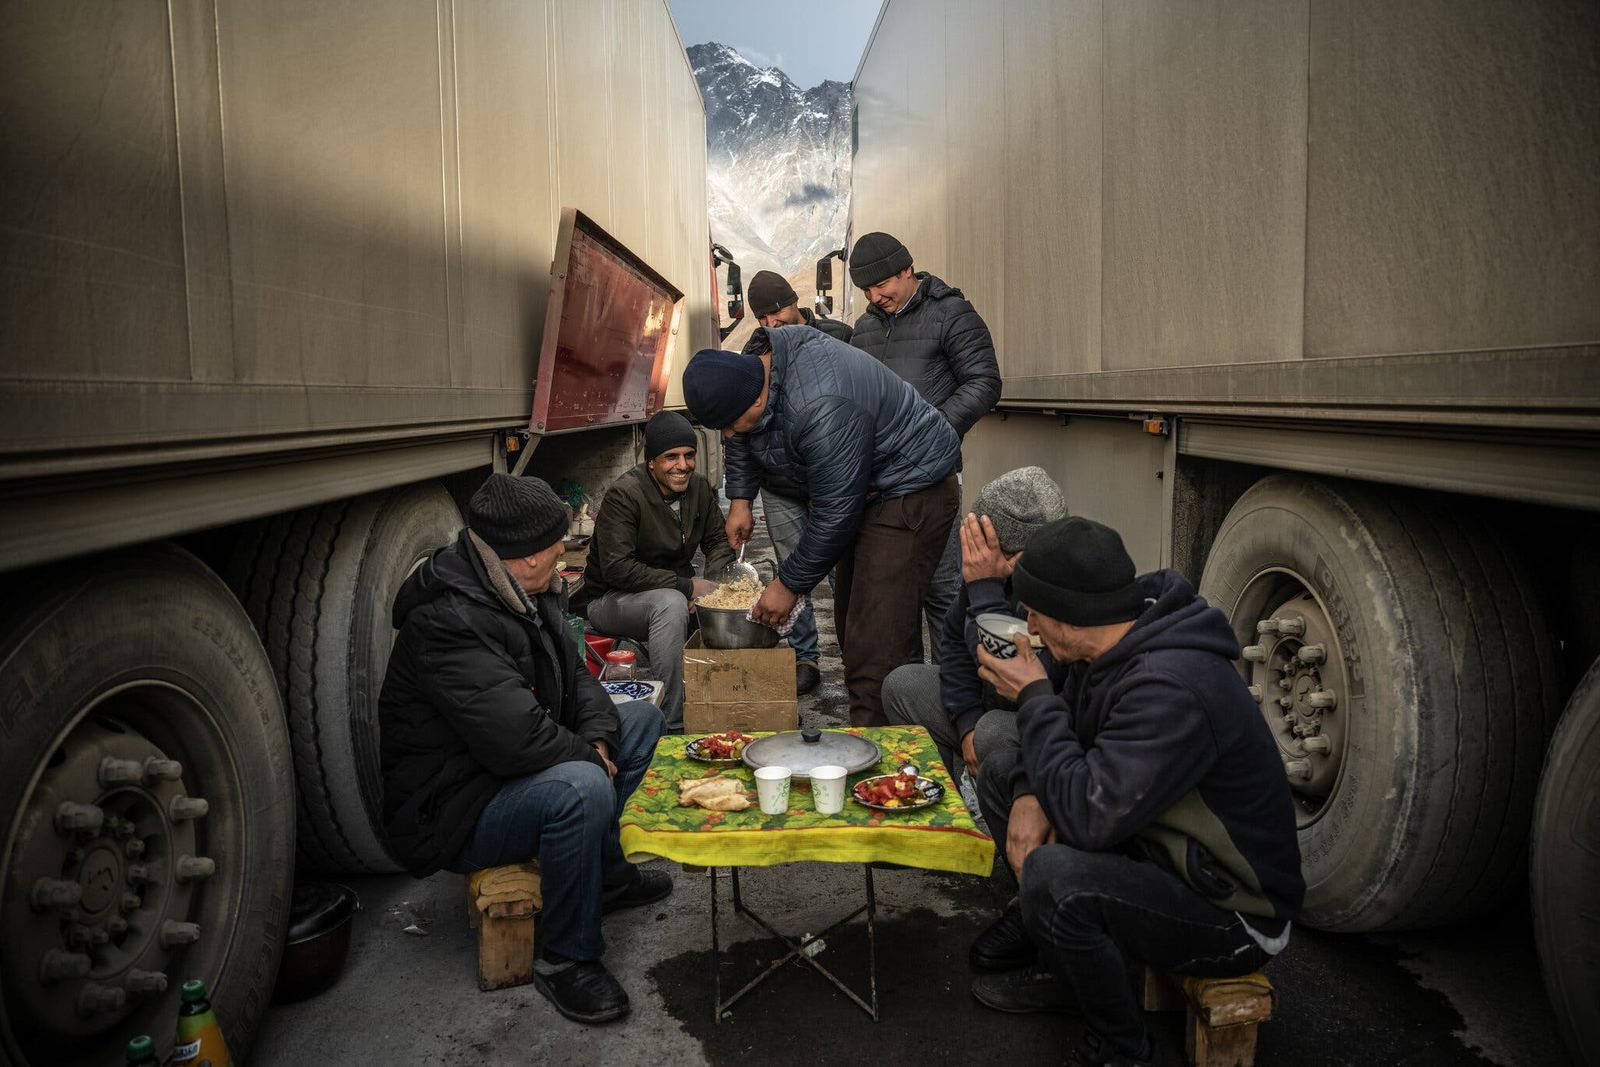 سائقو شاحنات في استراحة، بينما ينتظرون عبور الحدود من جوريا إلى روسيا - نيويورك تايمز